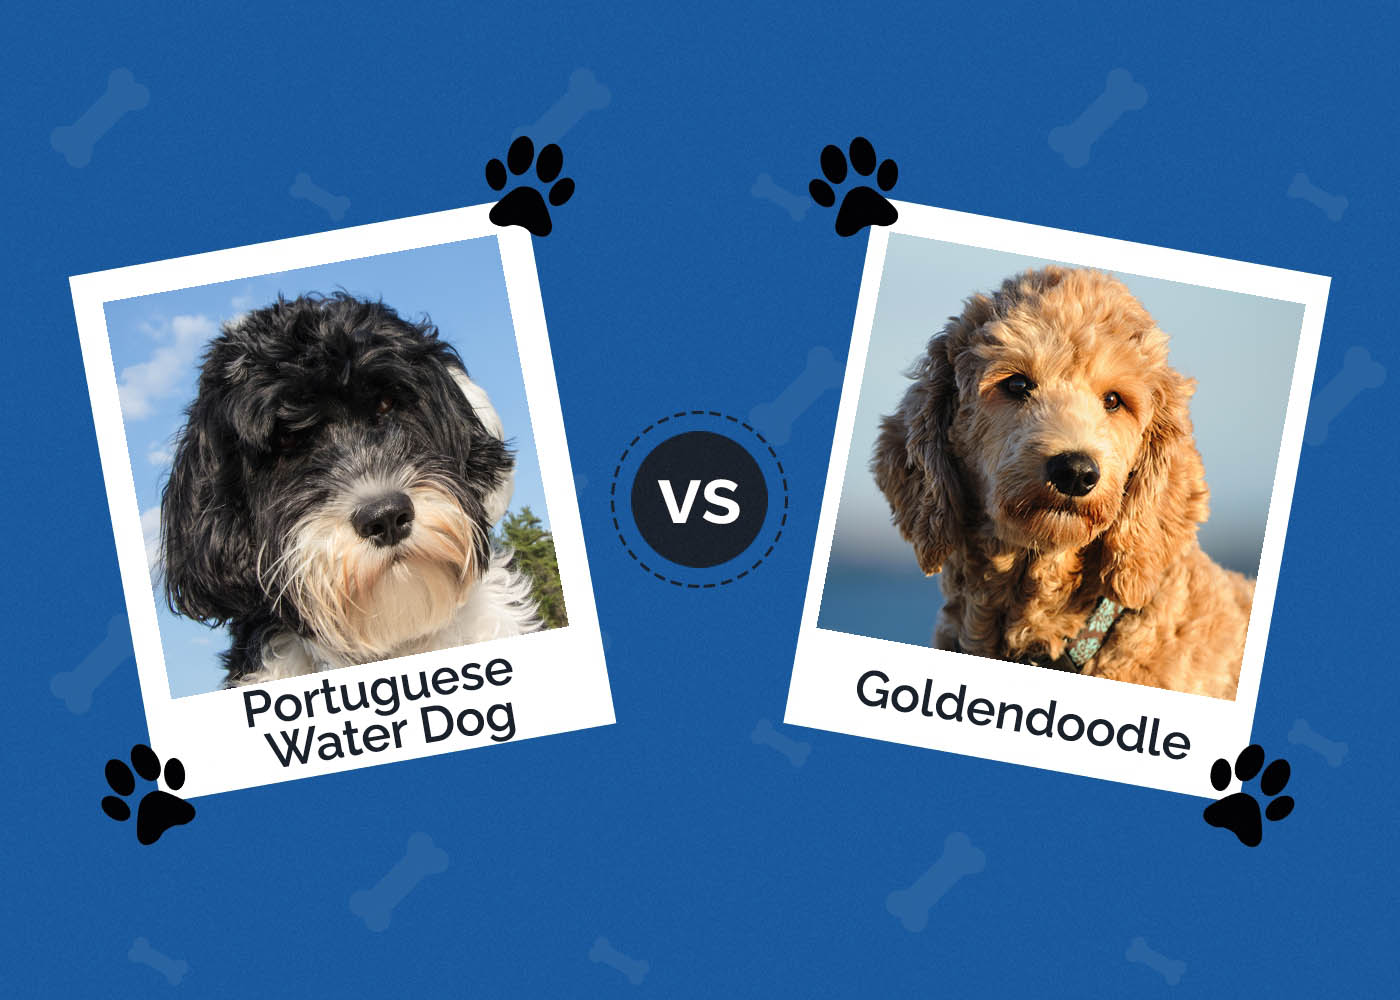 Portuguese Water Dog vs Goldendoodle